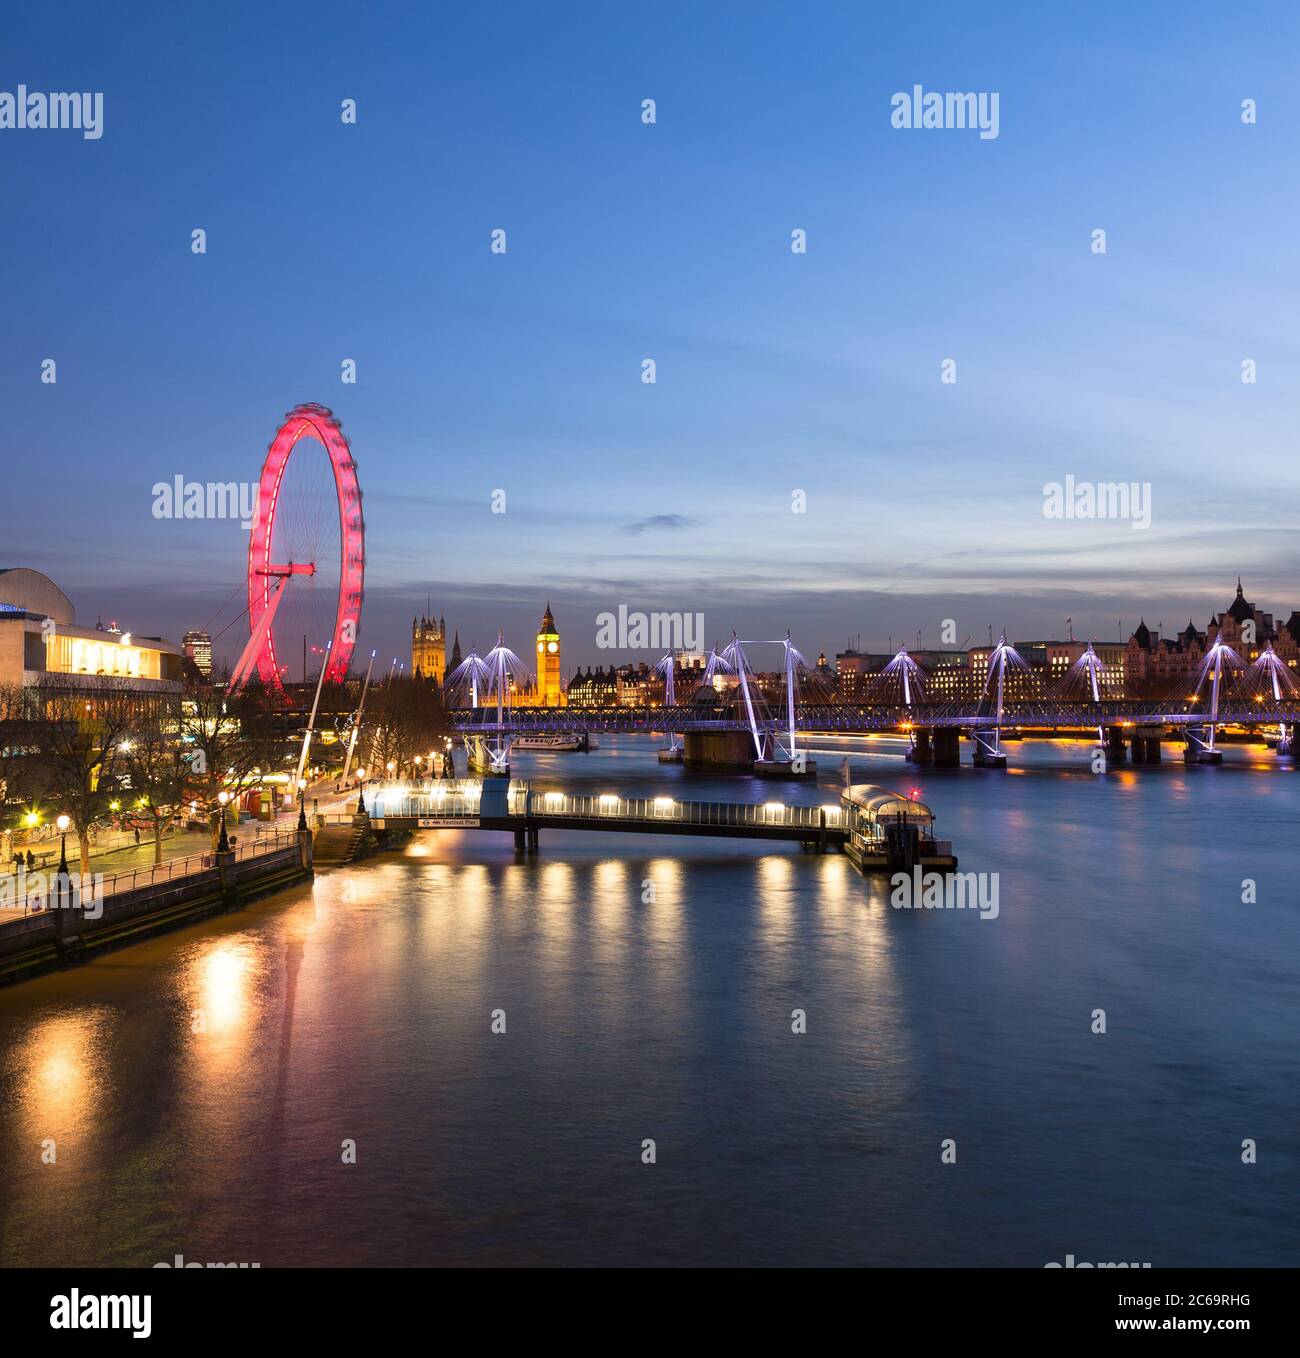 LONDRES, Royaume-Uni - 10 MARS 2015 : le Westminster Skyline de l'est montrant le London Eye, le Hungerford Bridge, Westminster et d'autres bâtiments Banque D'Images